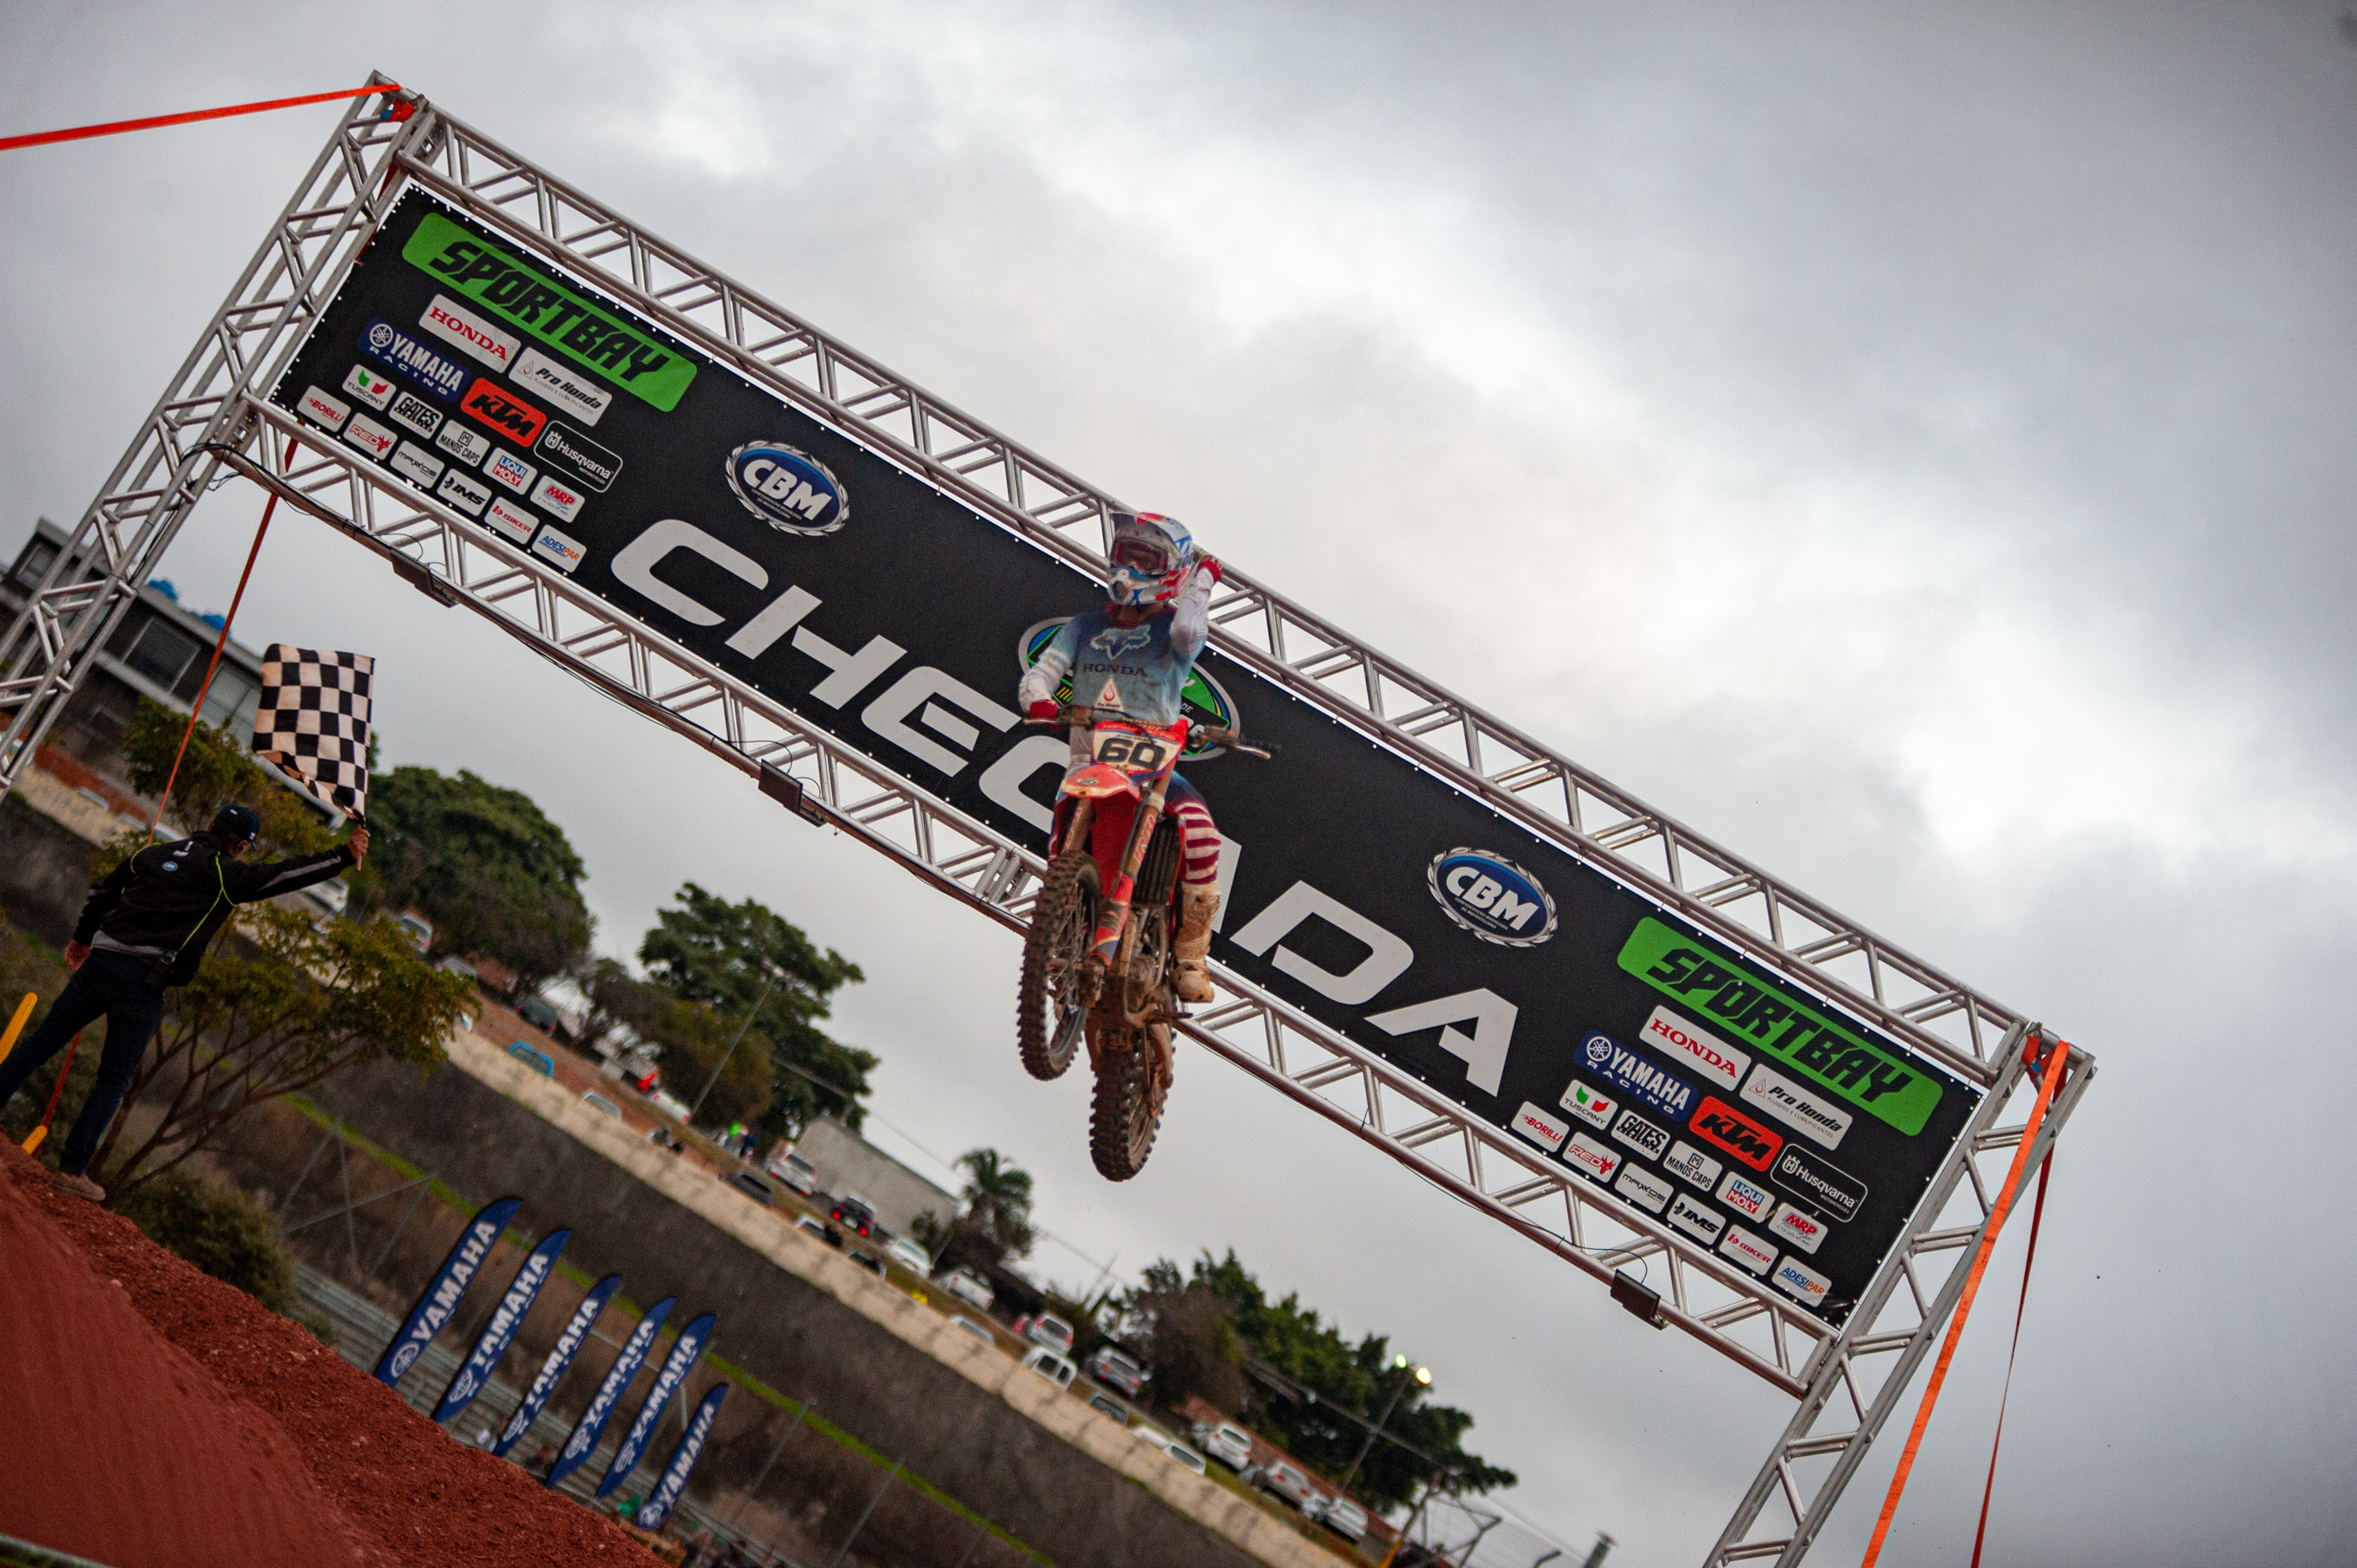 Resultados do Campeonato Brasileiro de Motocross em Interlagos